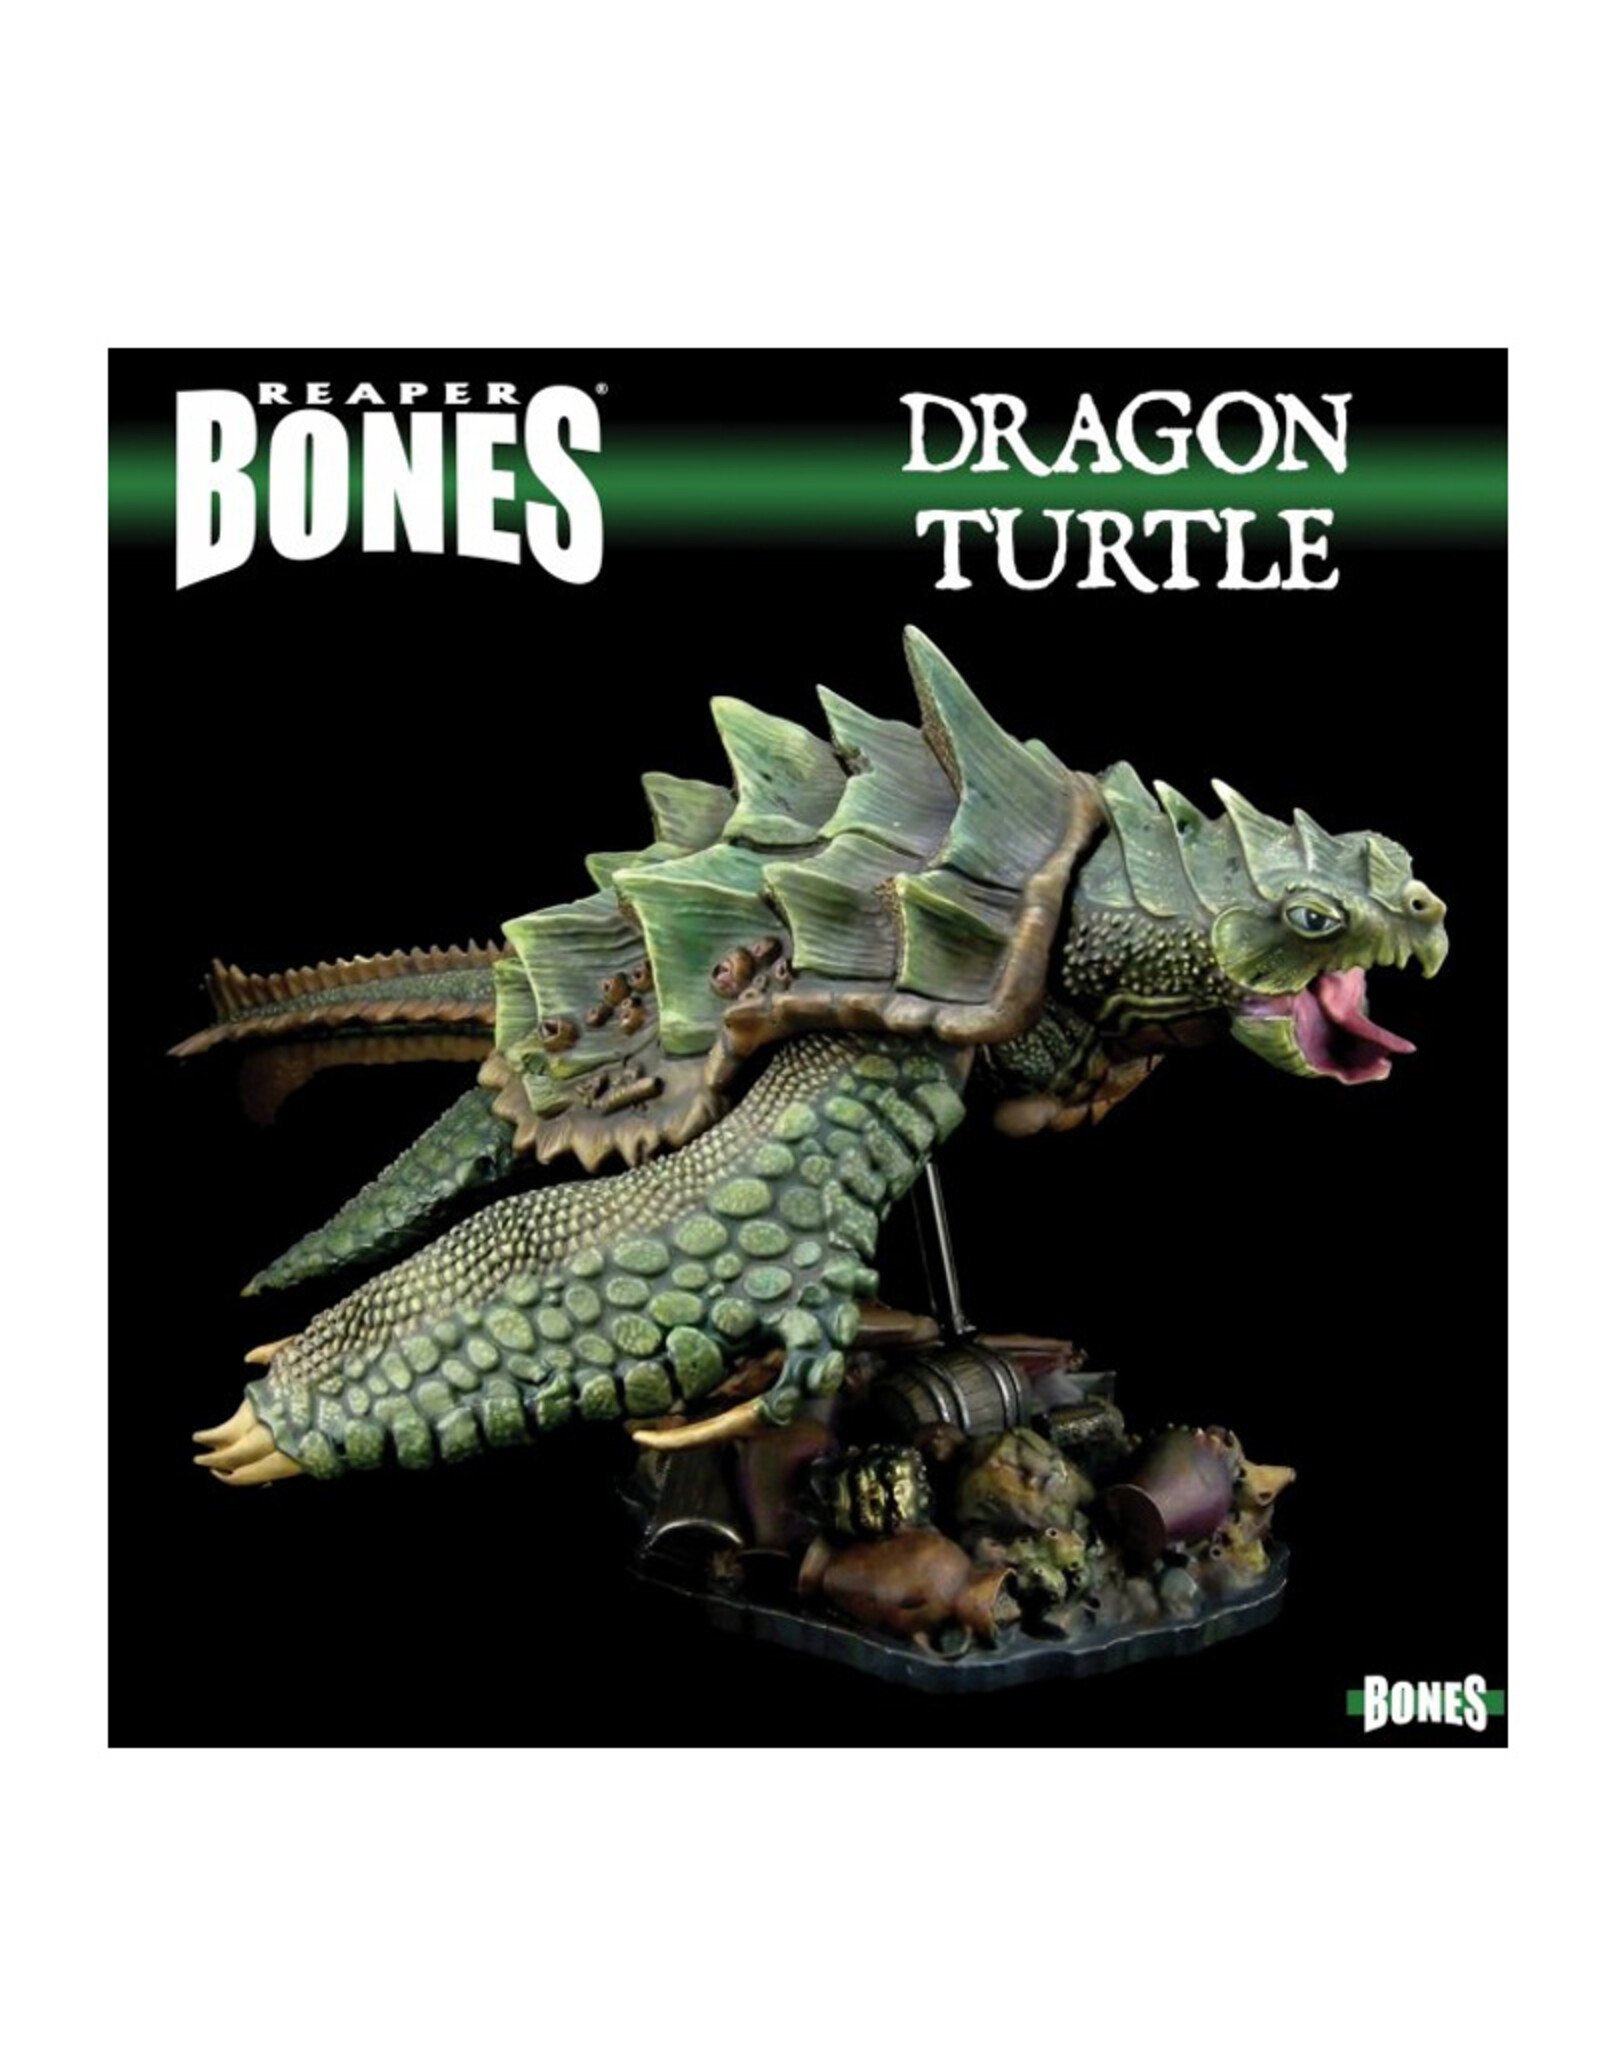 Reaper Reaper Bones: Dragon Turtle #77922